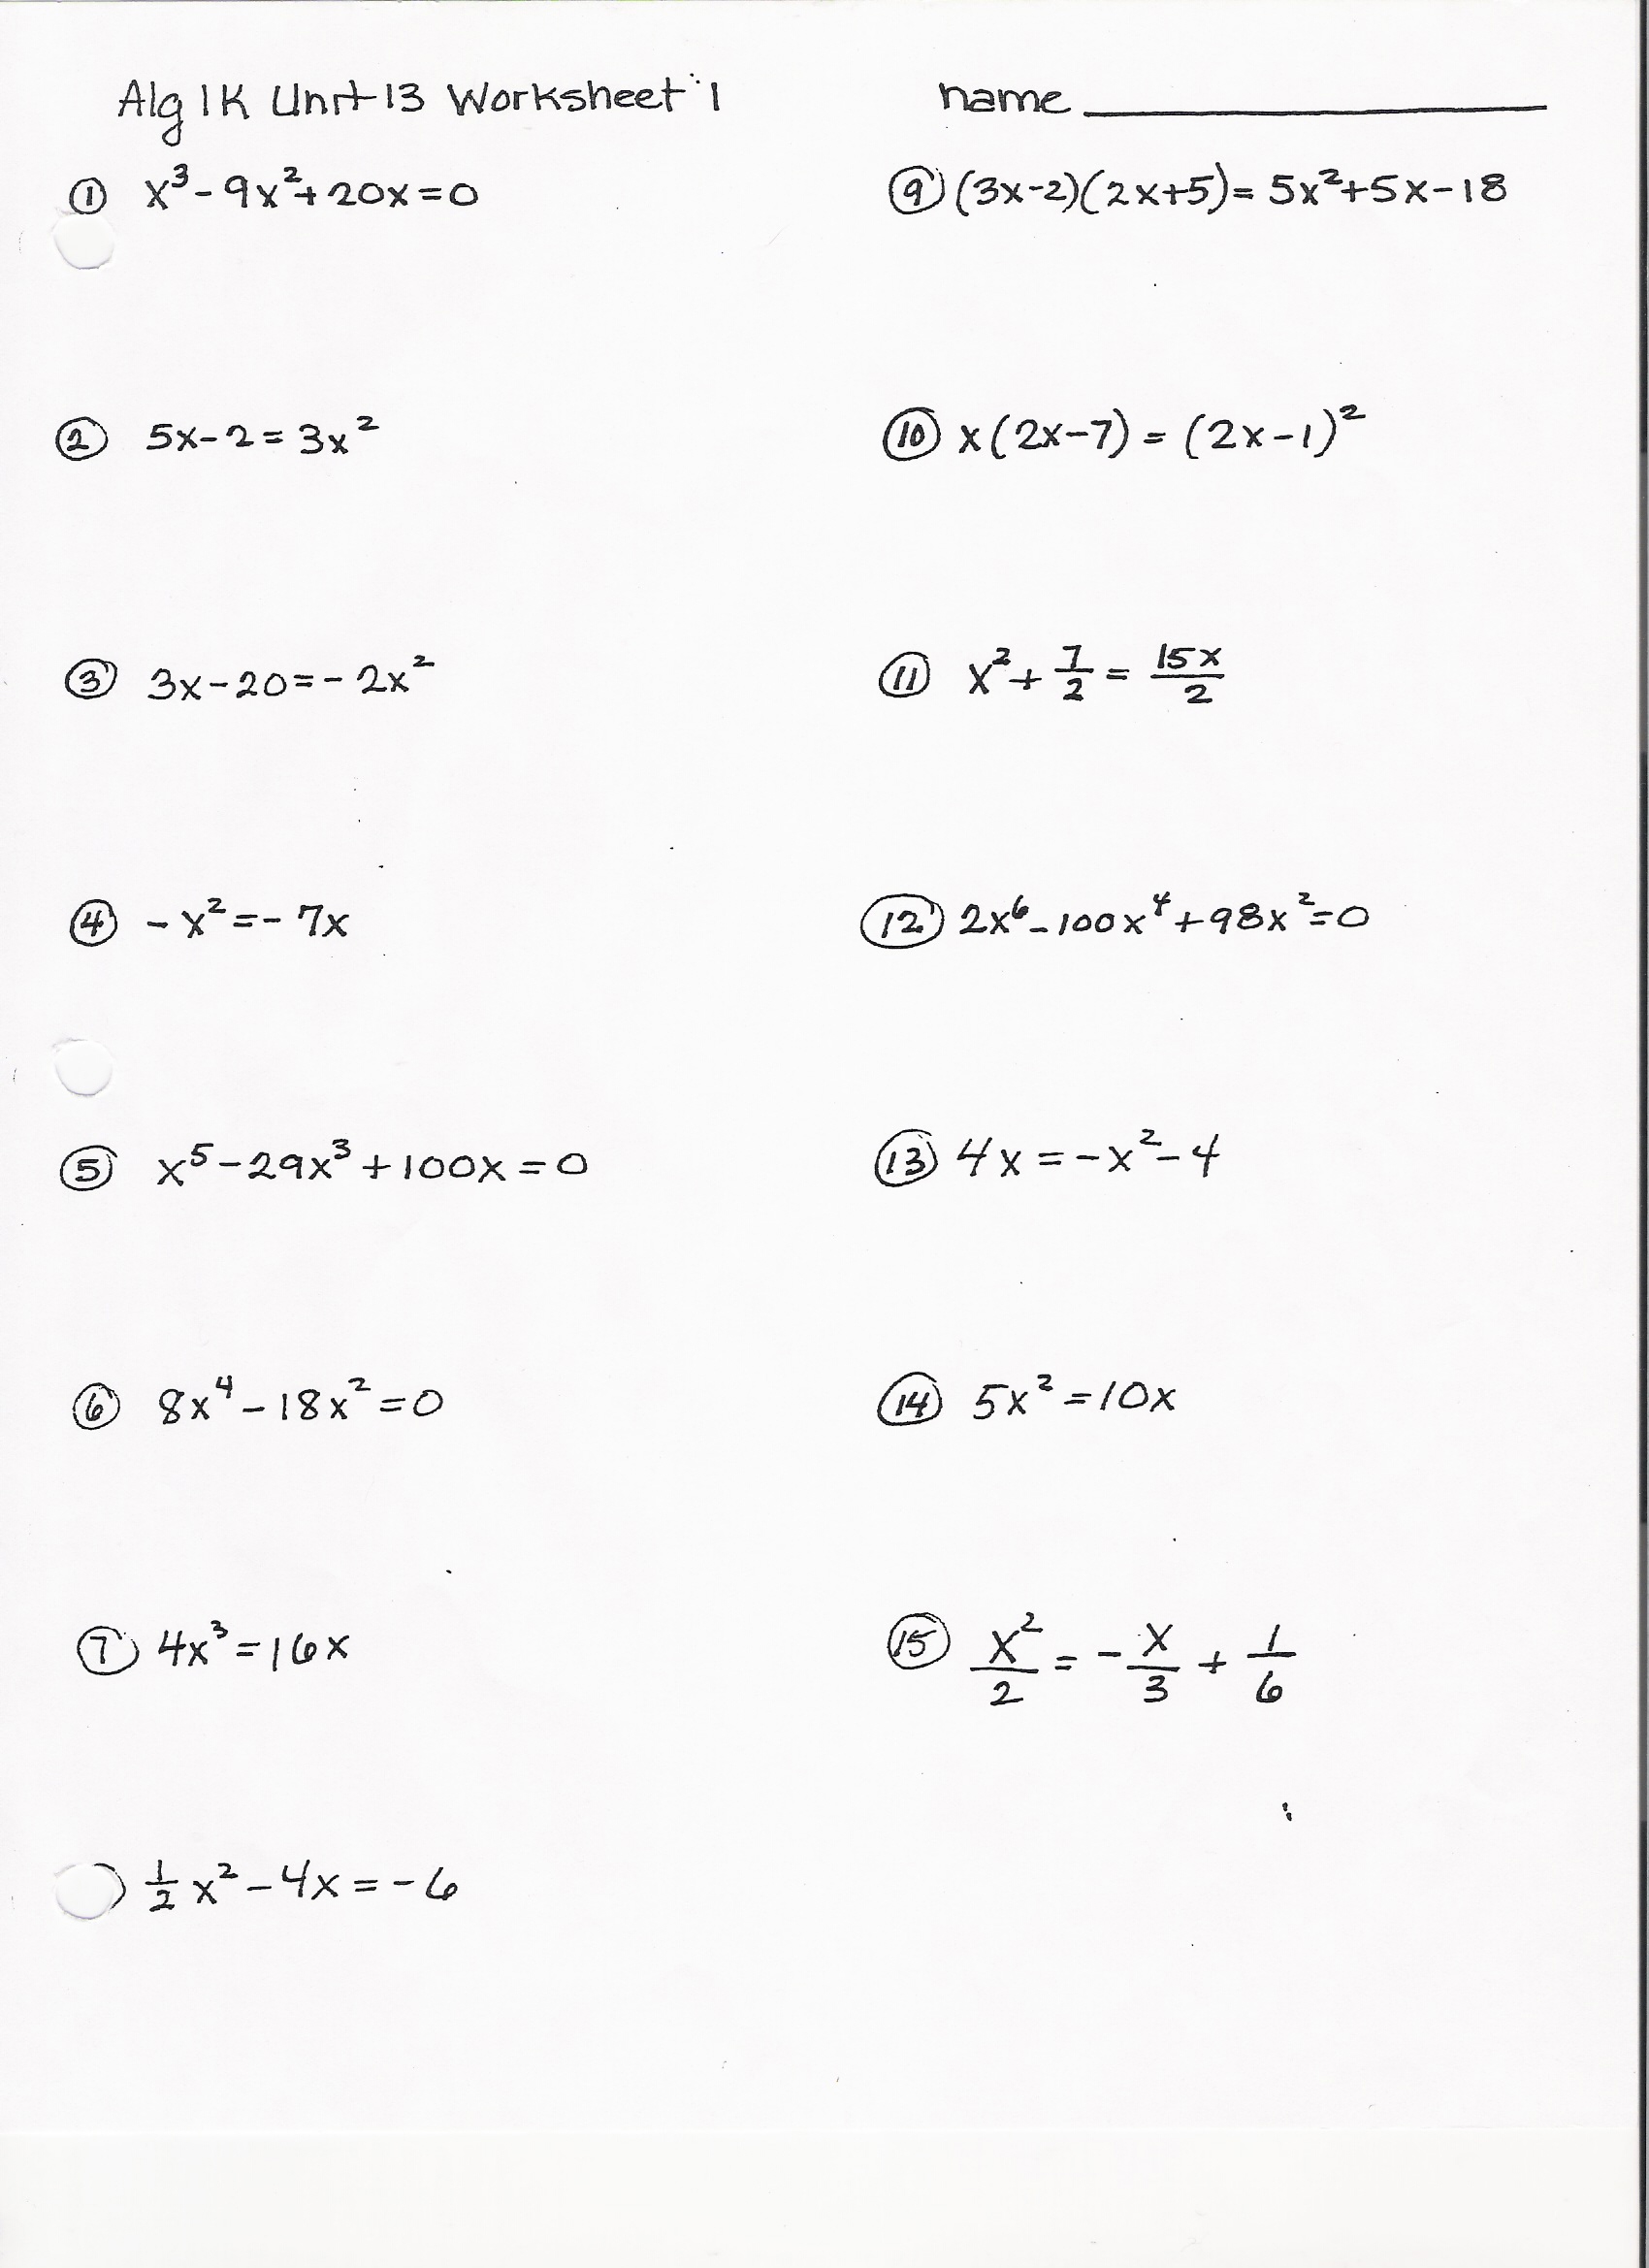 Algebra 1 Factoring Worksheets Image